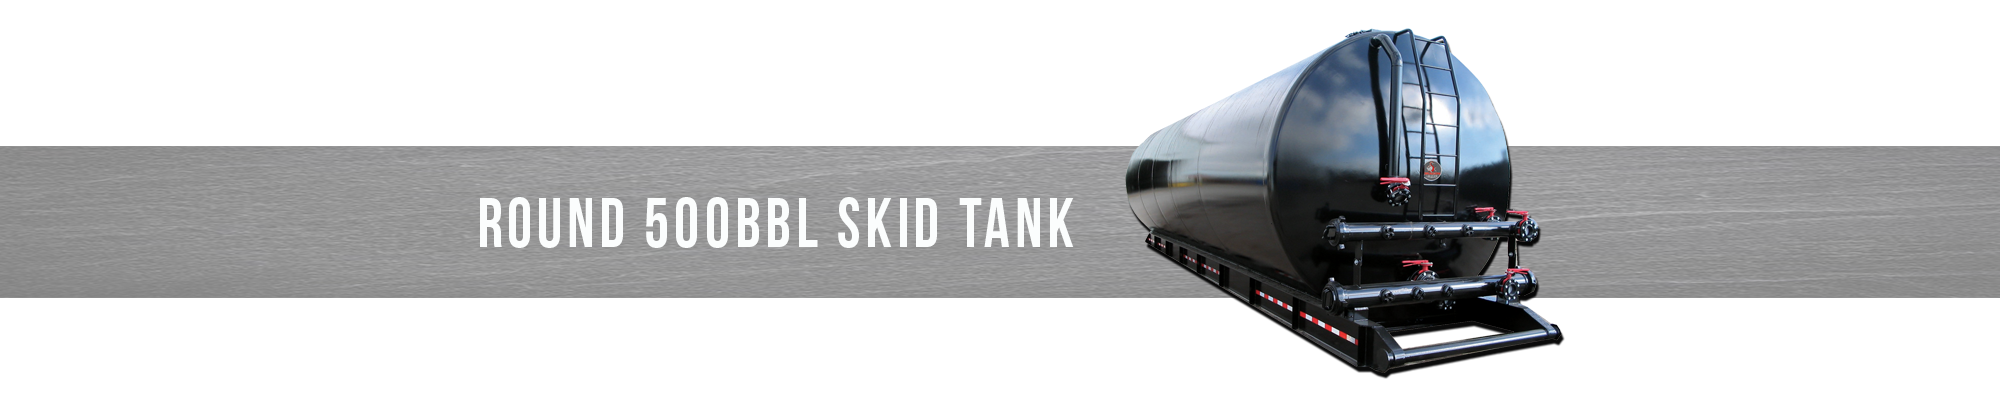 Round 500BBL Skid Tank